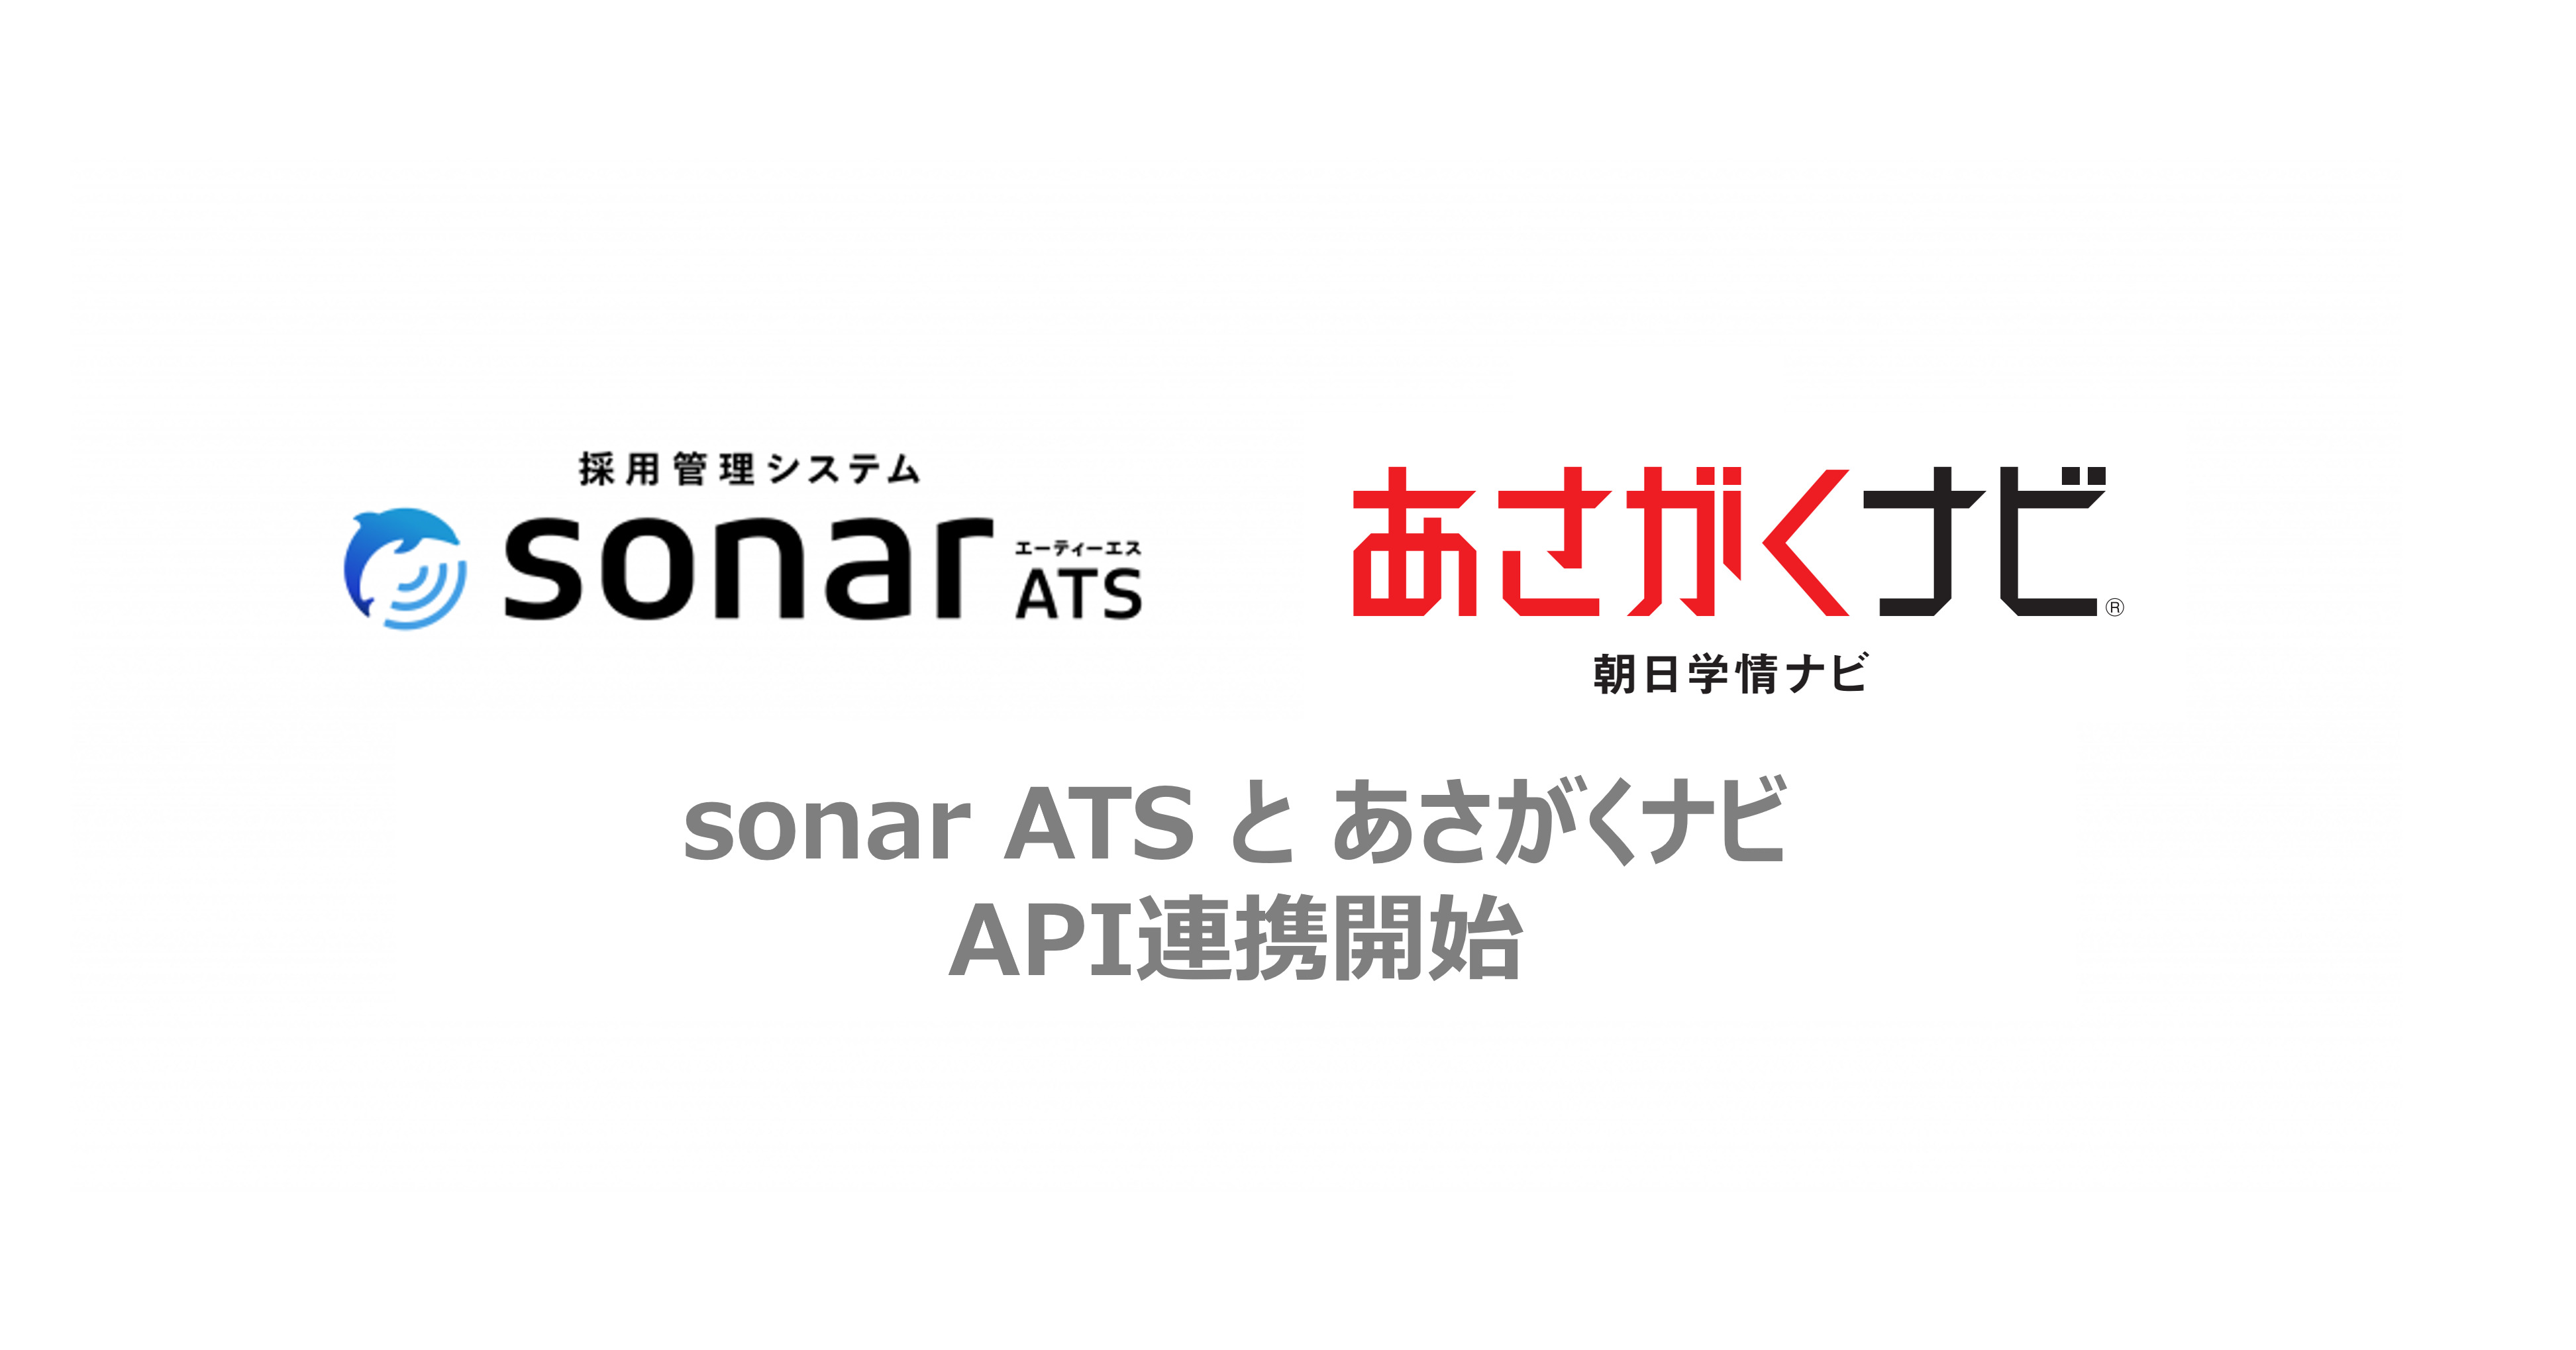 採用管理システム「sonar ATS」、 新卒採用サイト「あさがくナビ」との API 連携が決定